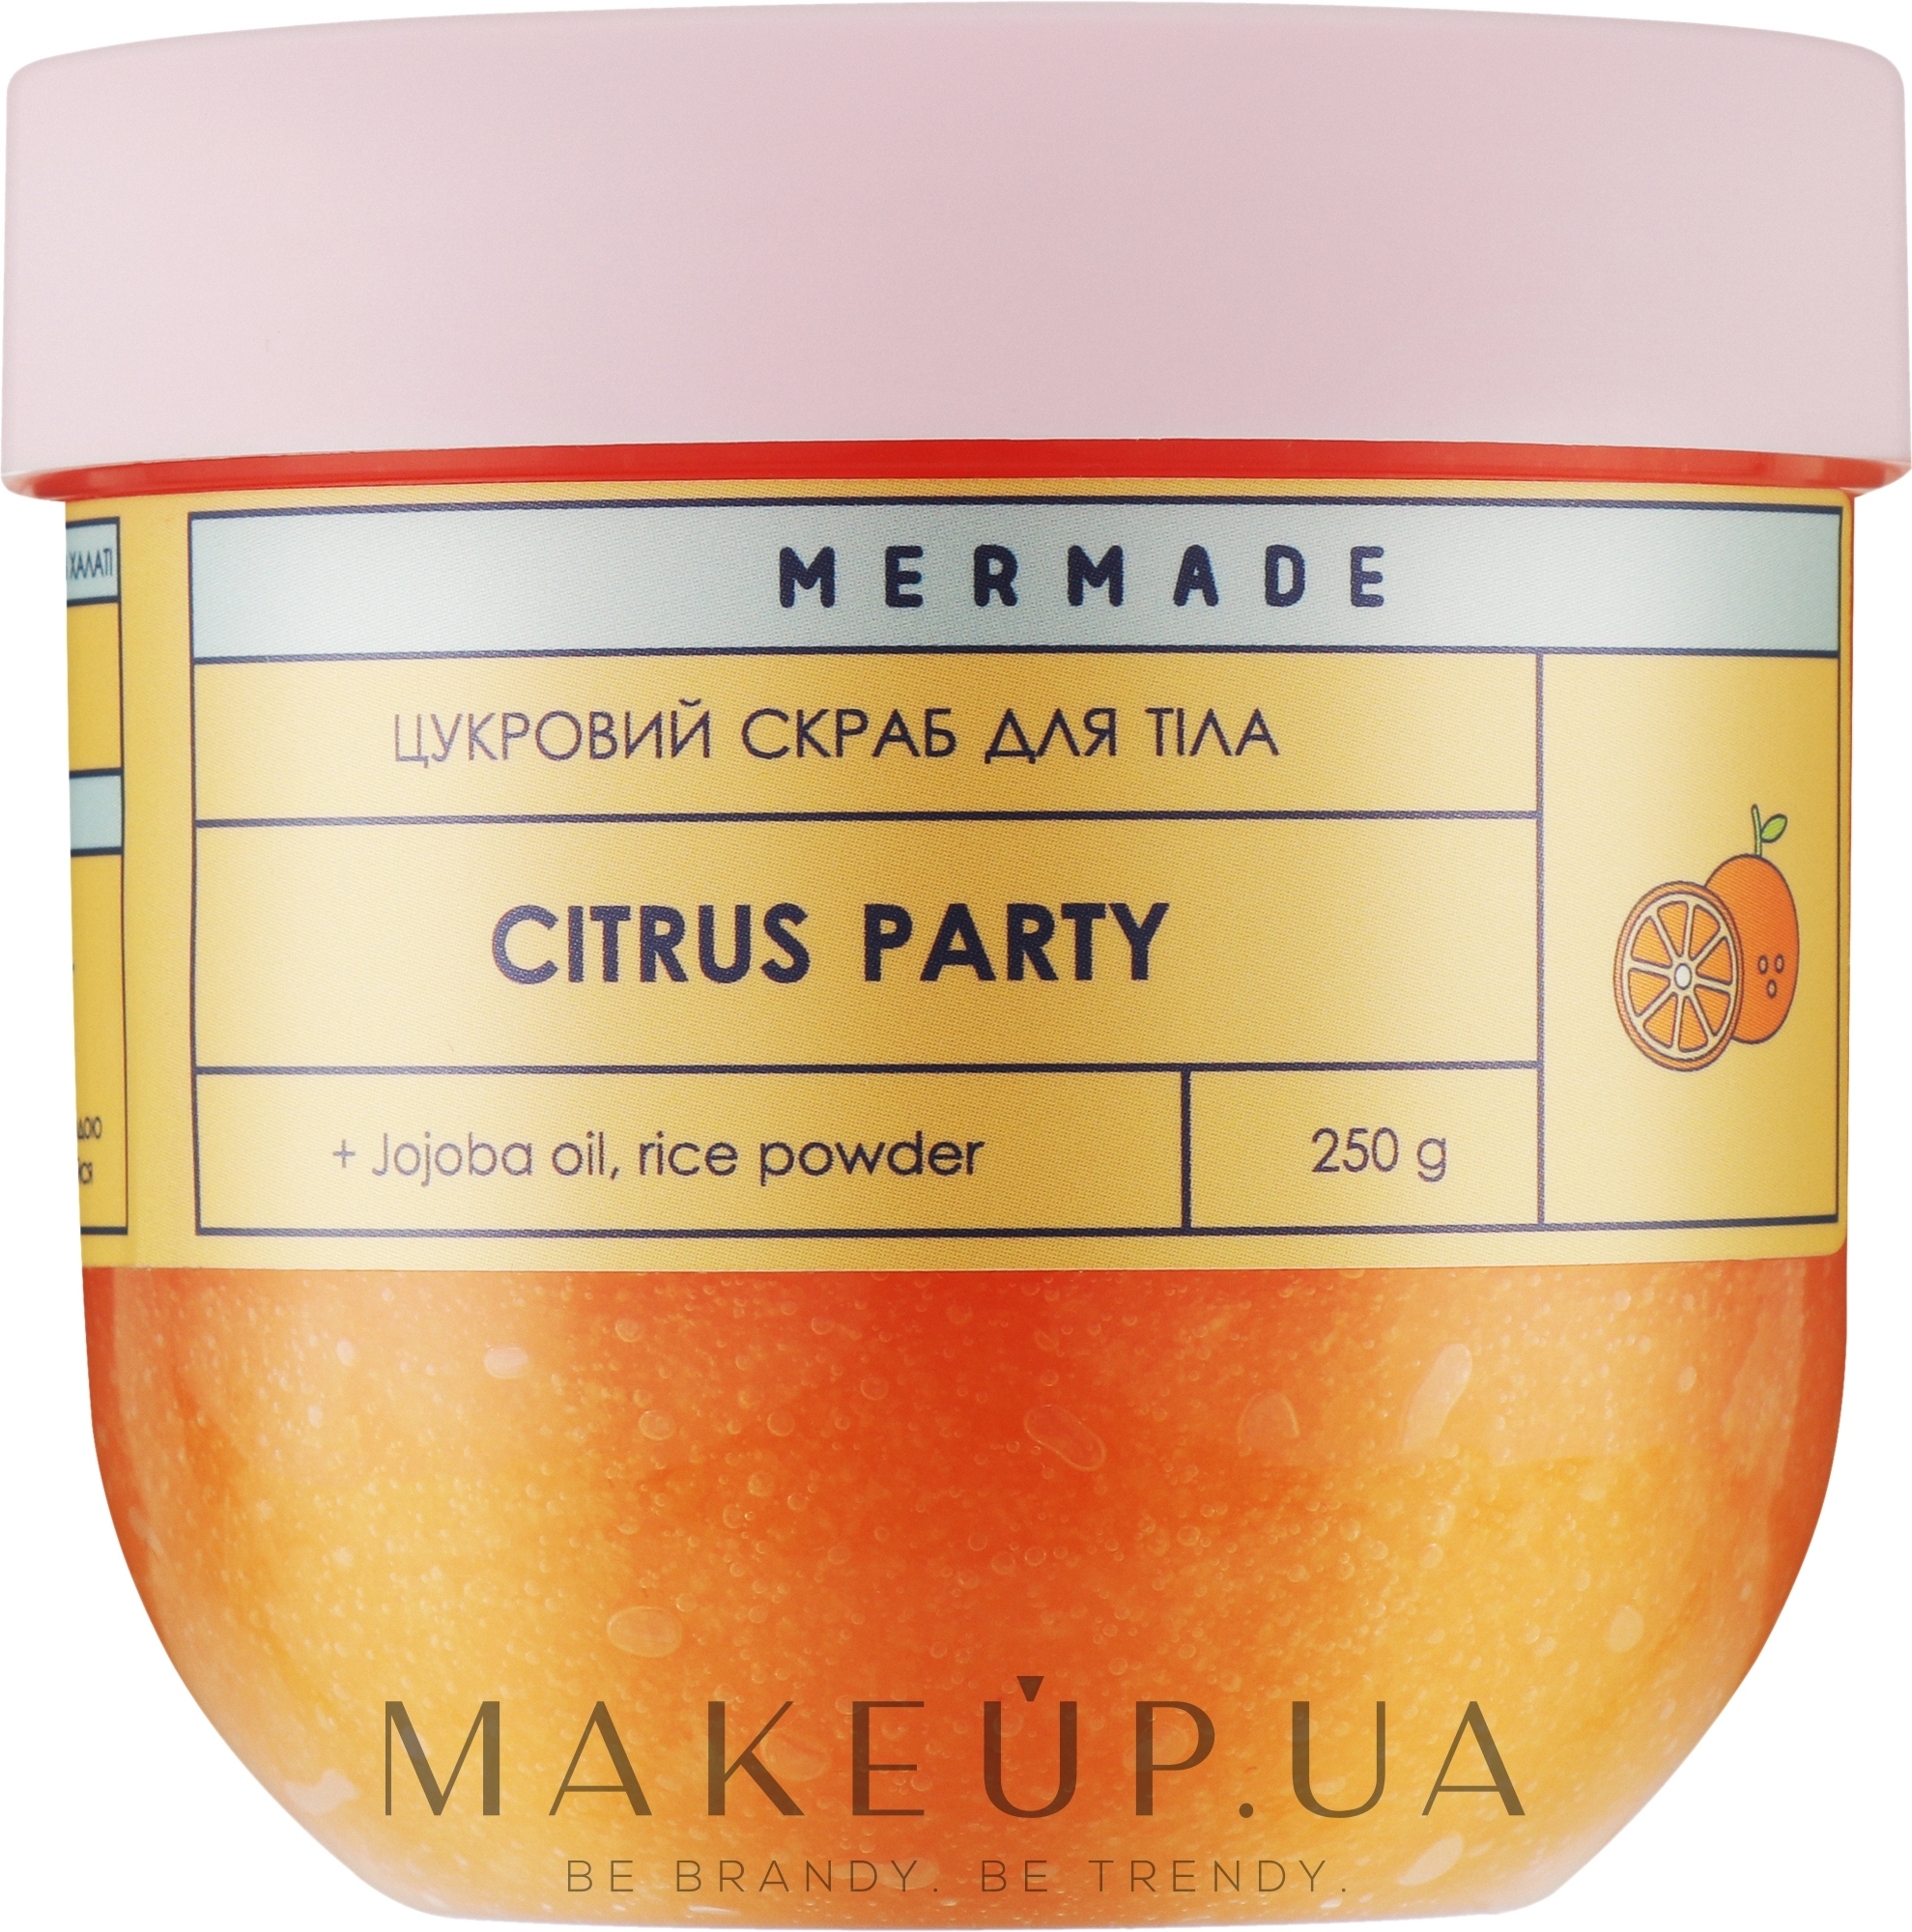 Цукровий скраб для тіла - Mermade Citrus Party — фото 250g